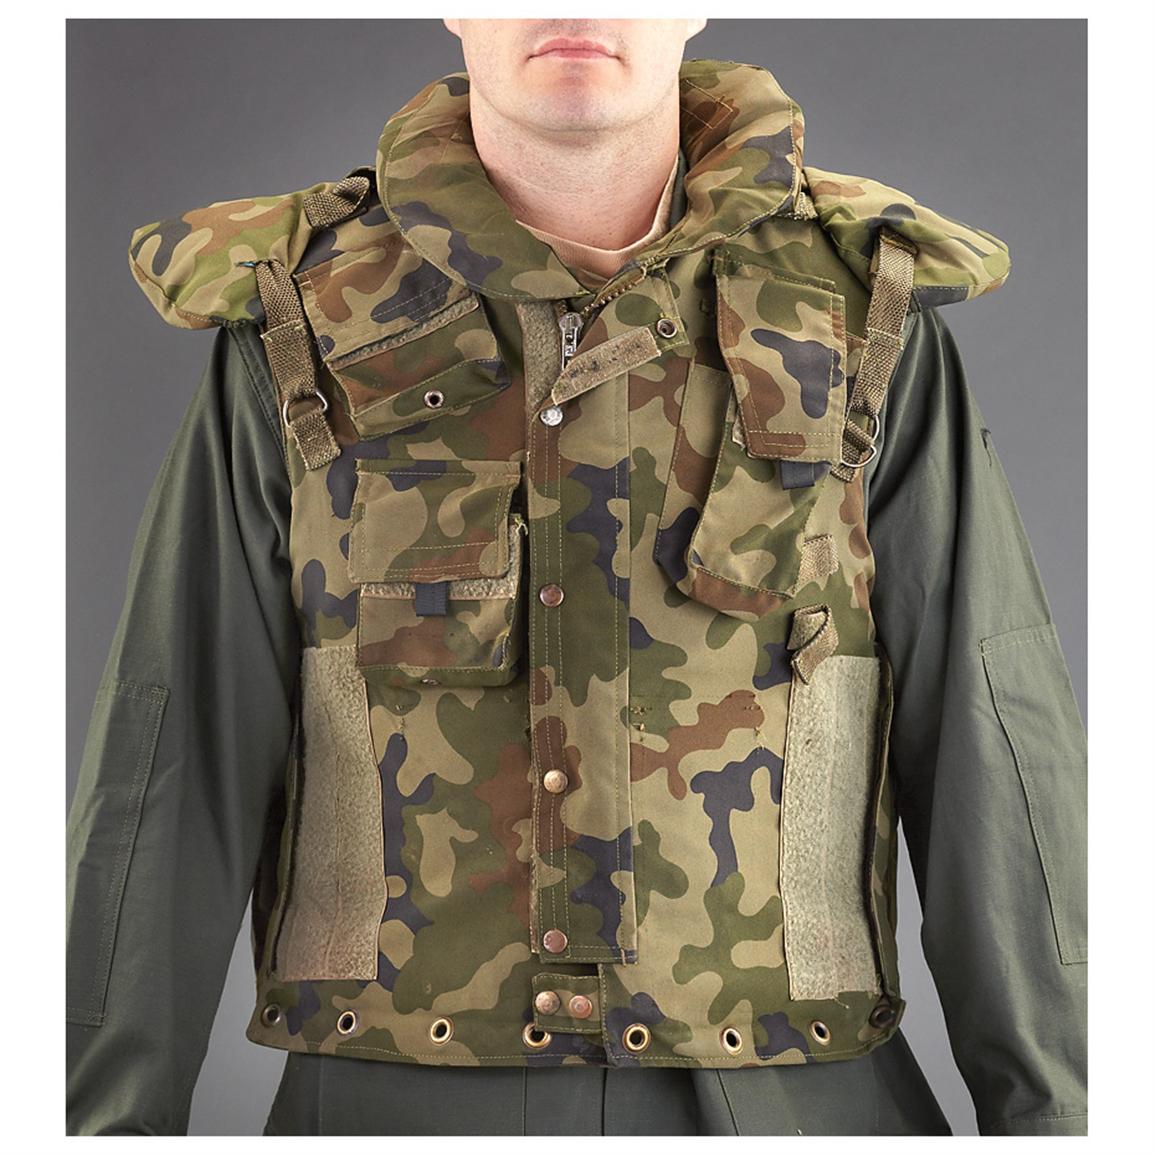 Army Surplus Flak Jacket - Army Military